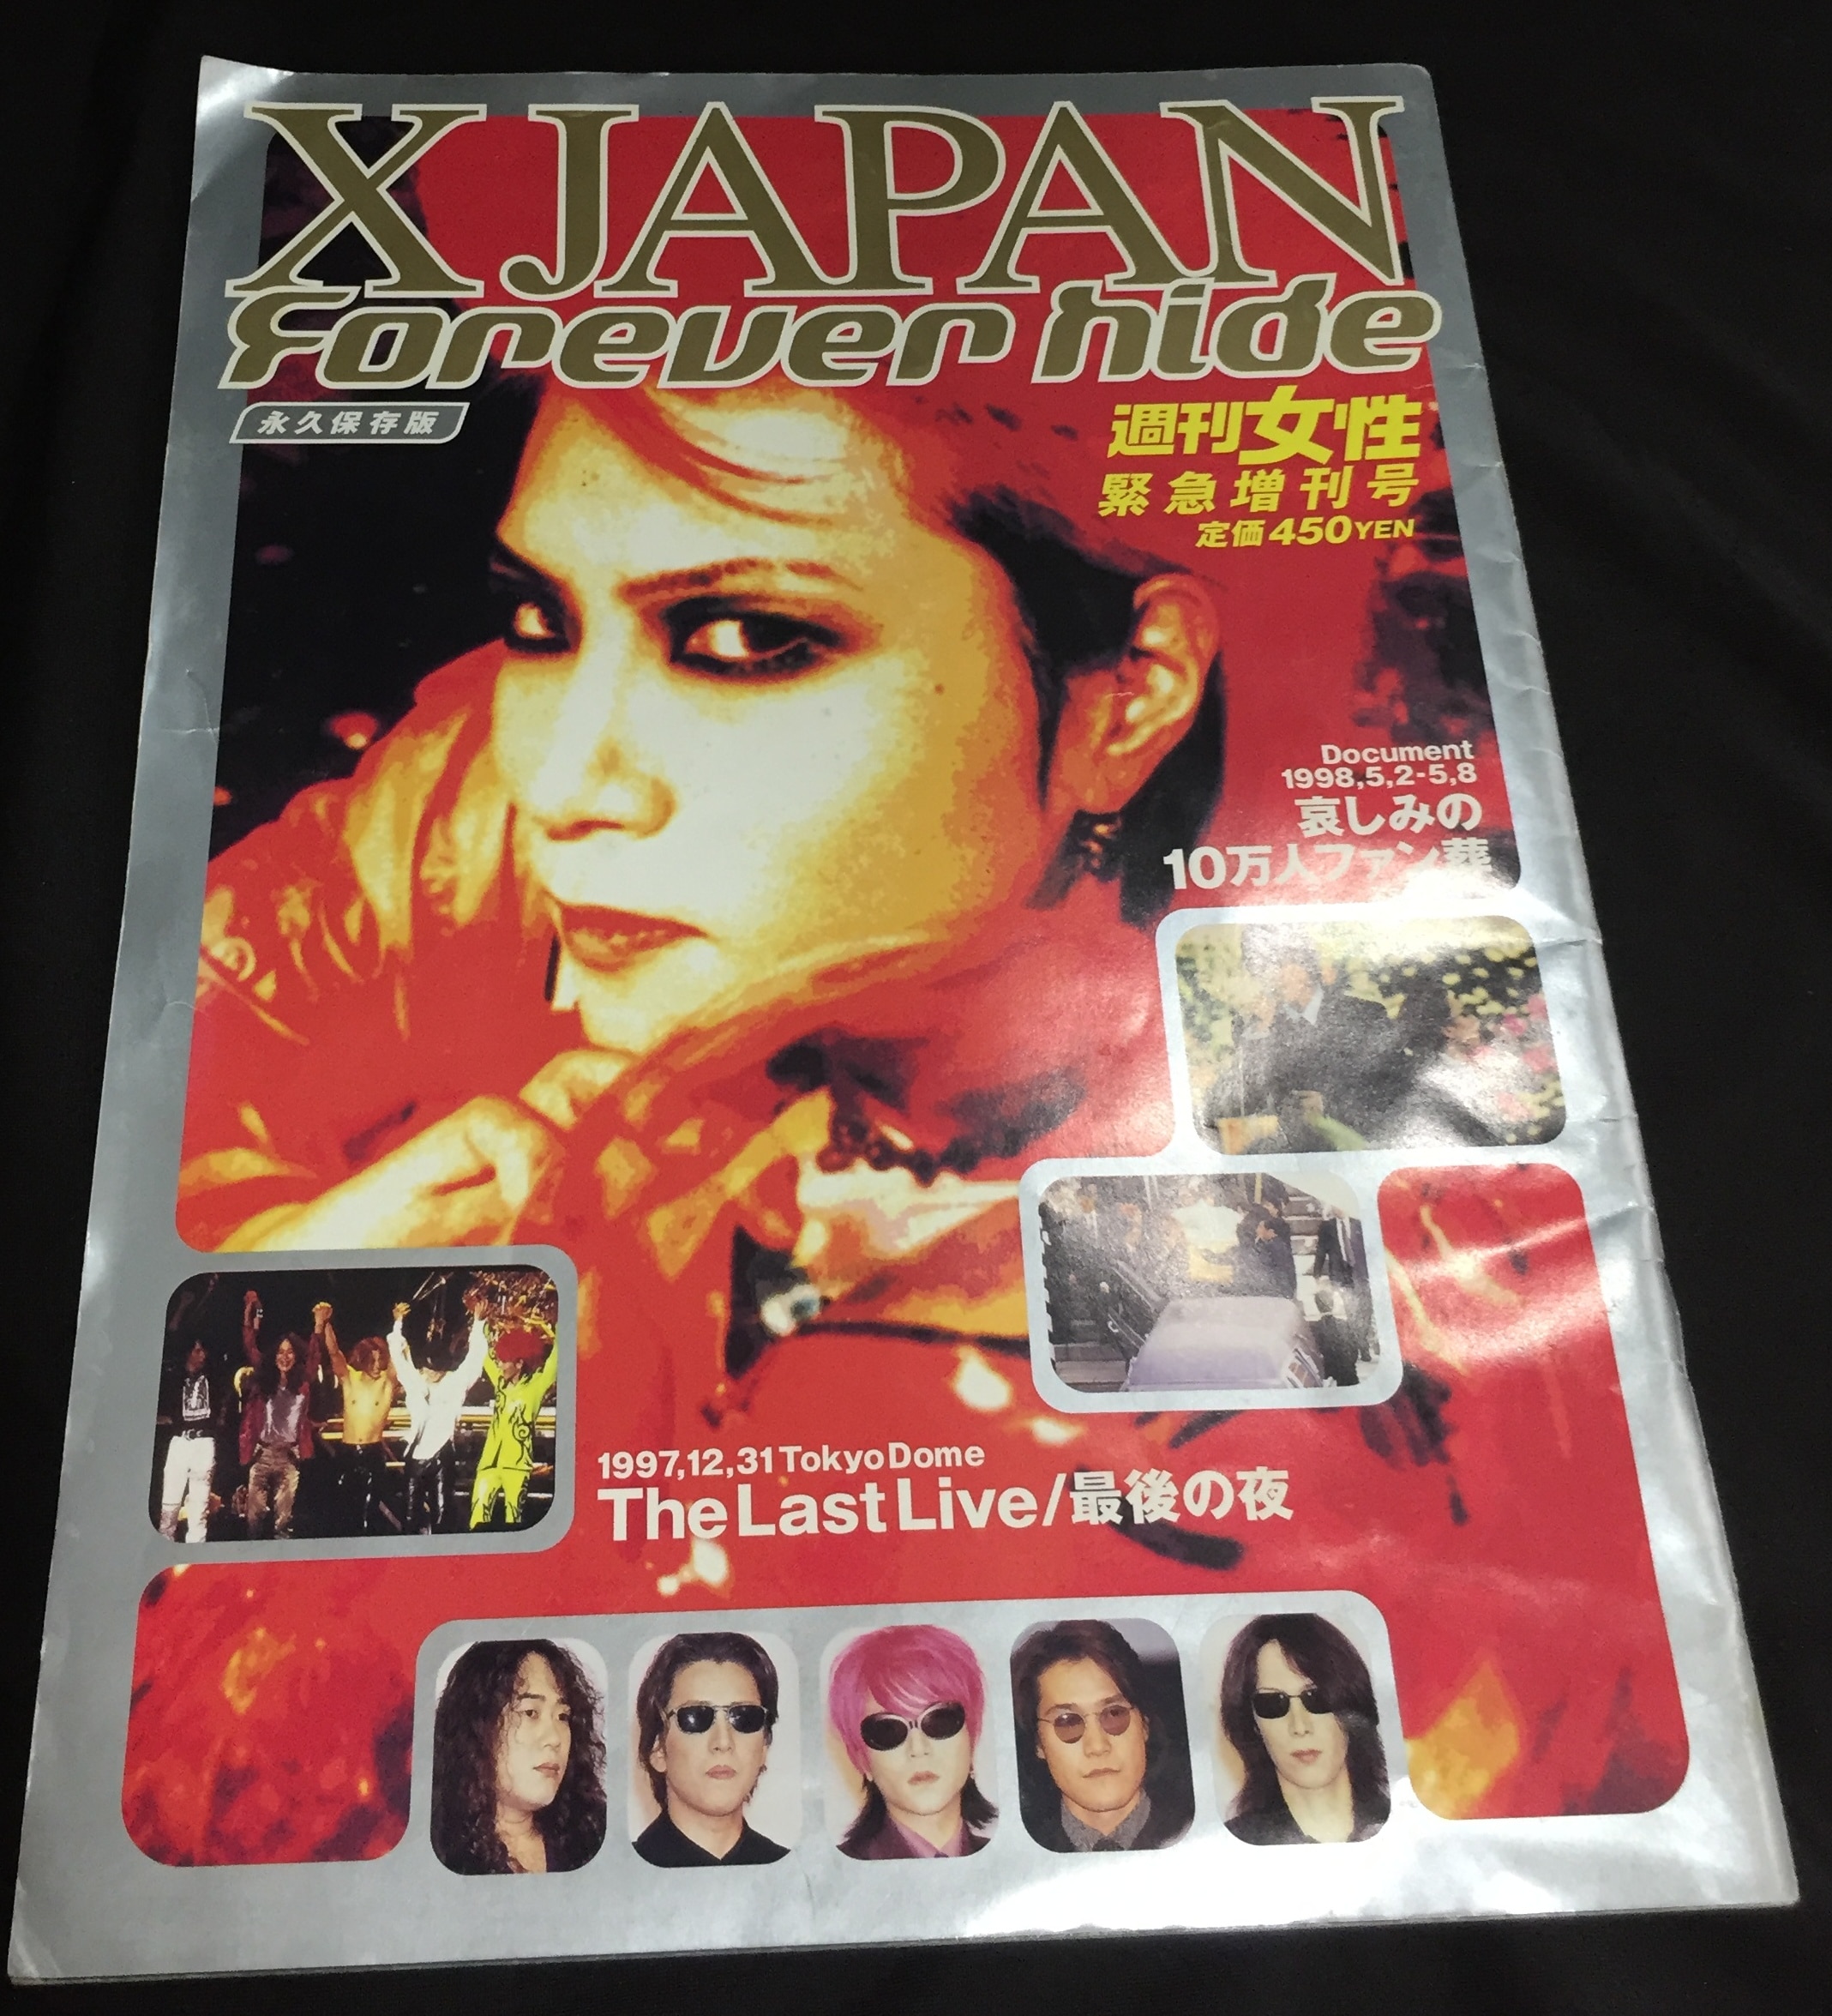 週刊女性1998年 HIDE YOSHIKI XJAPAN 週刊誌 雑誌 - アート/エンタメ 